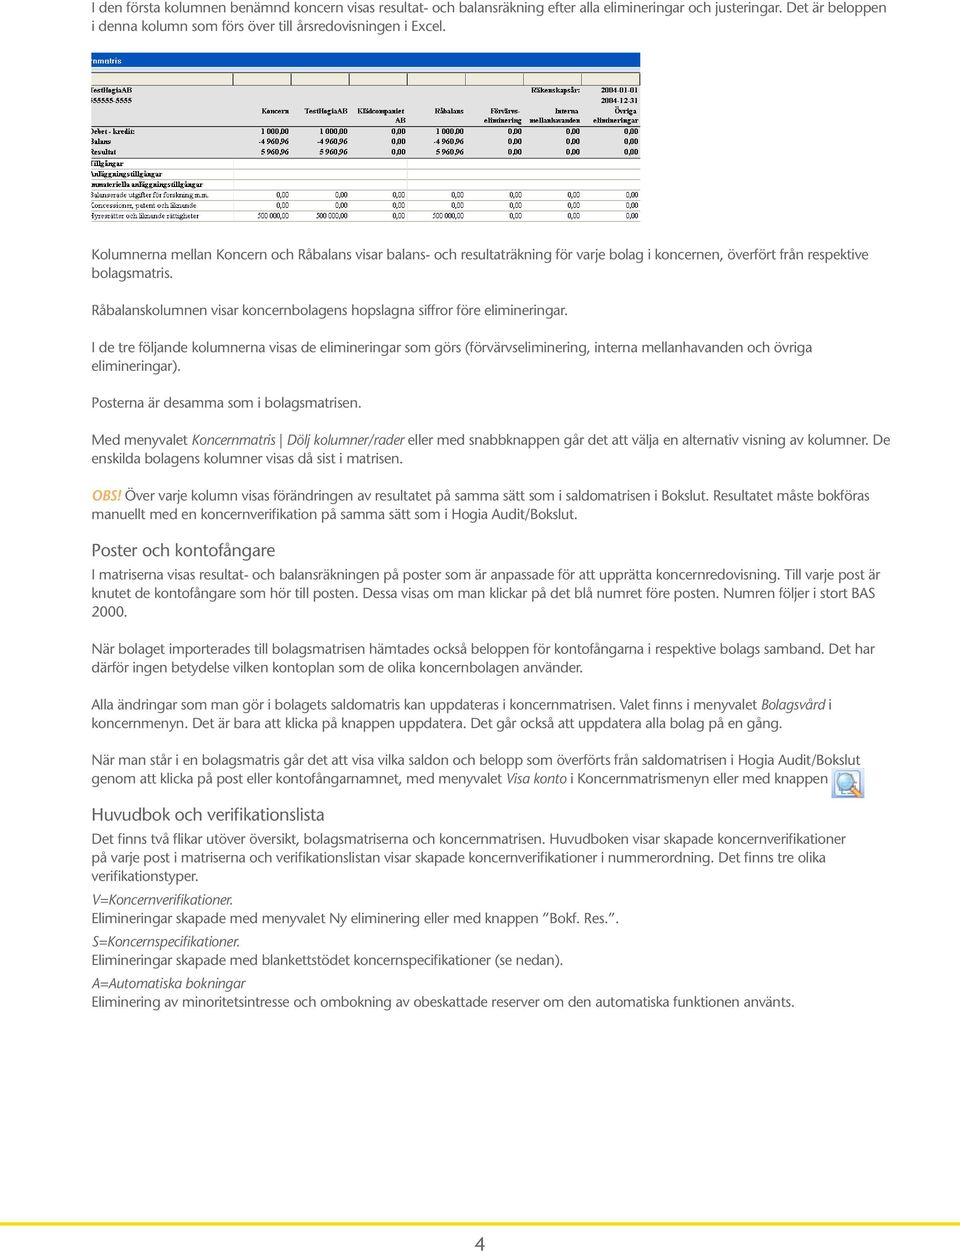 Råbalanskolumnen visar koncernbolagens hopslagna siffror före elimineringar.